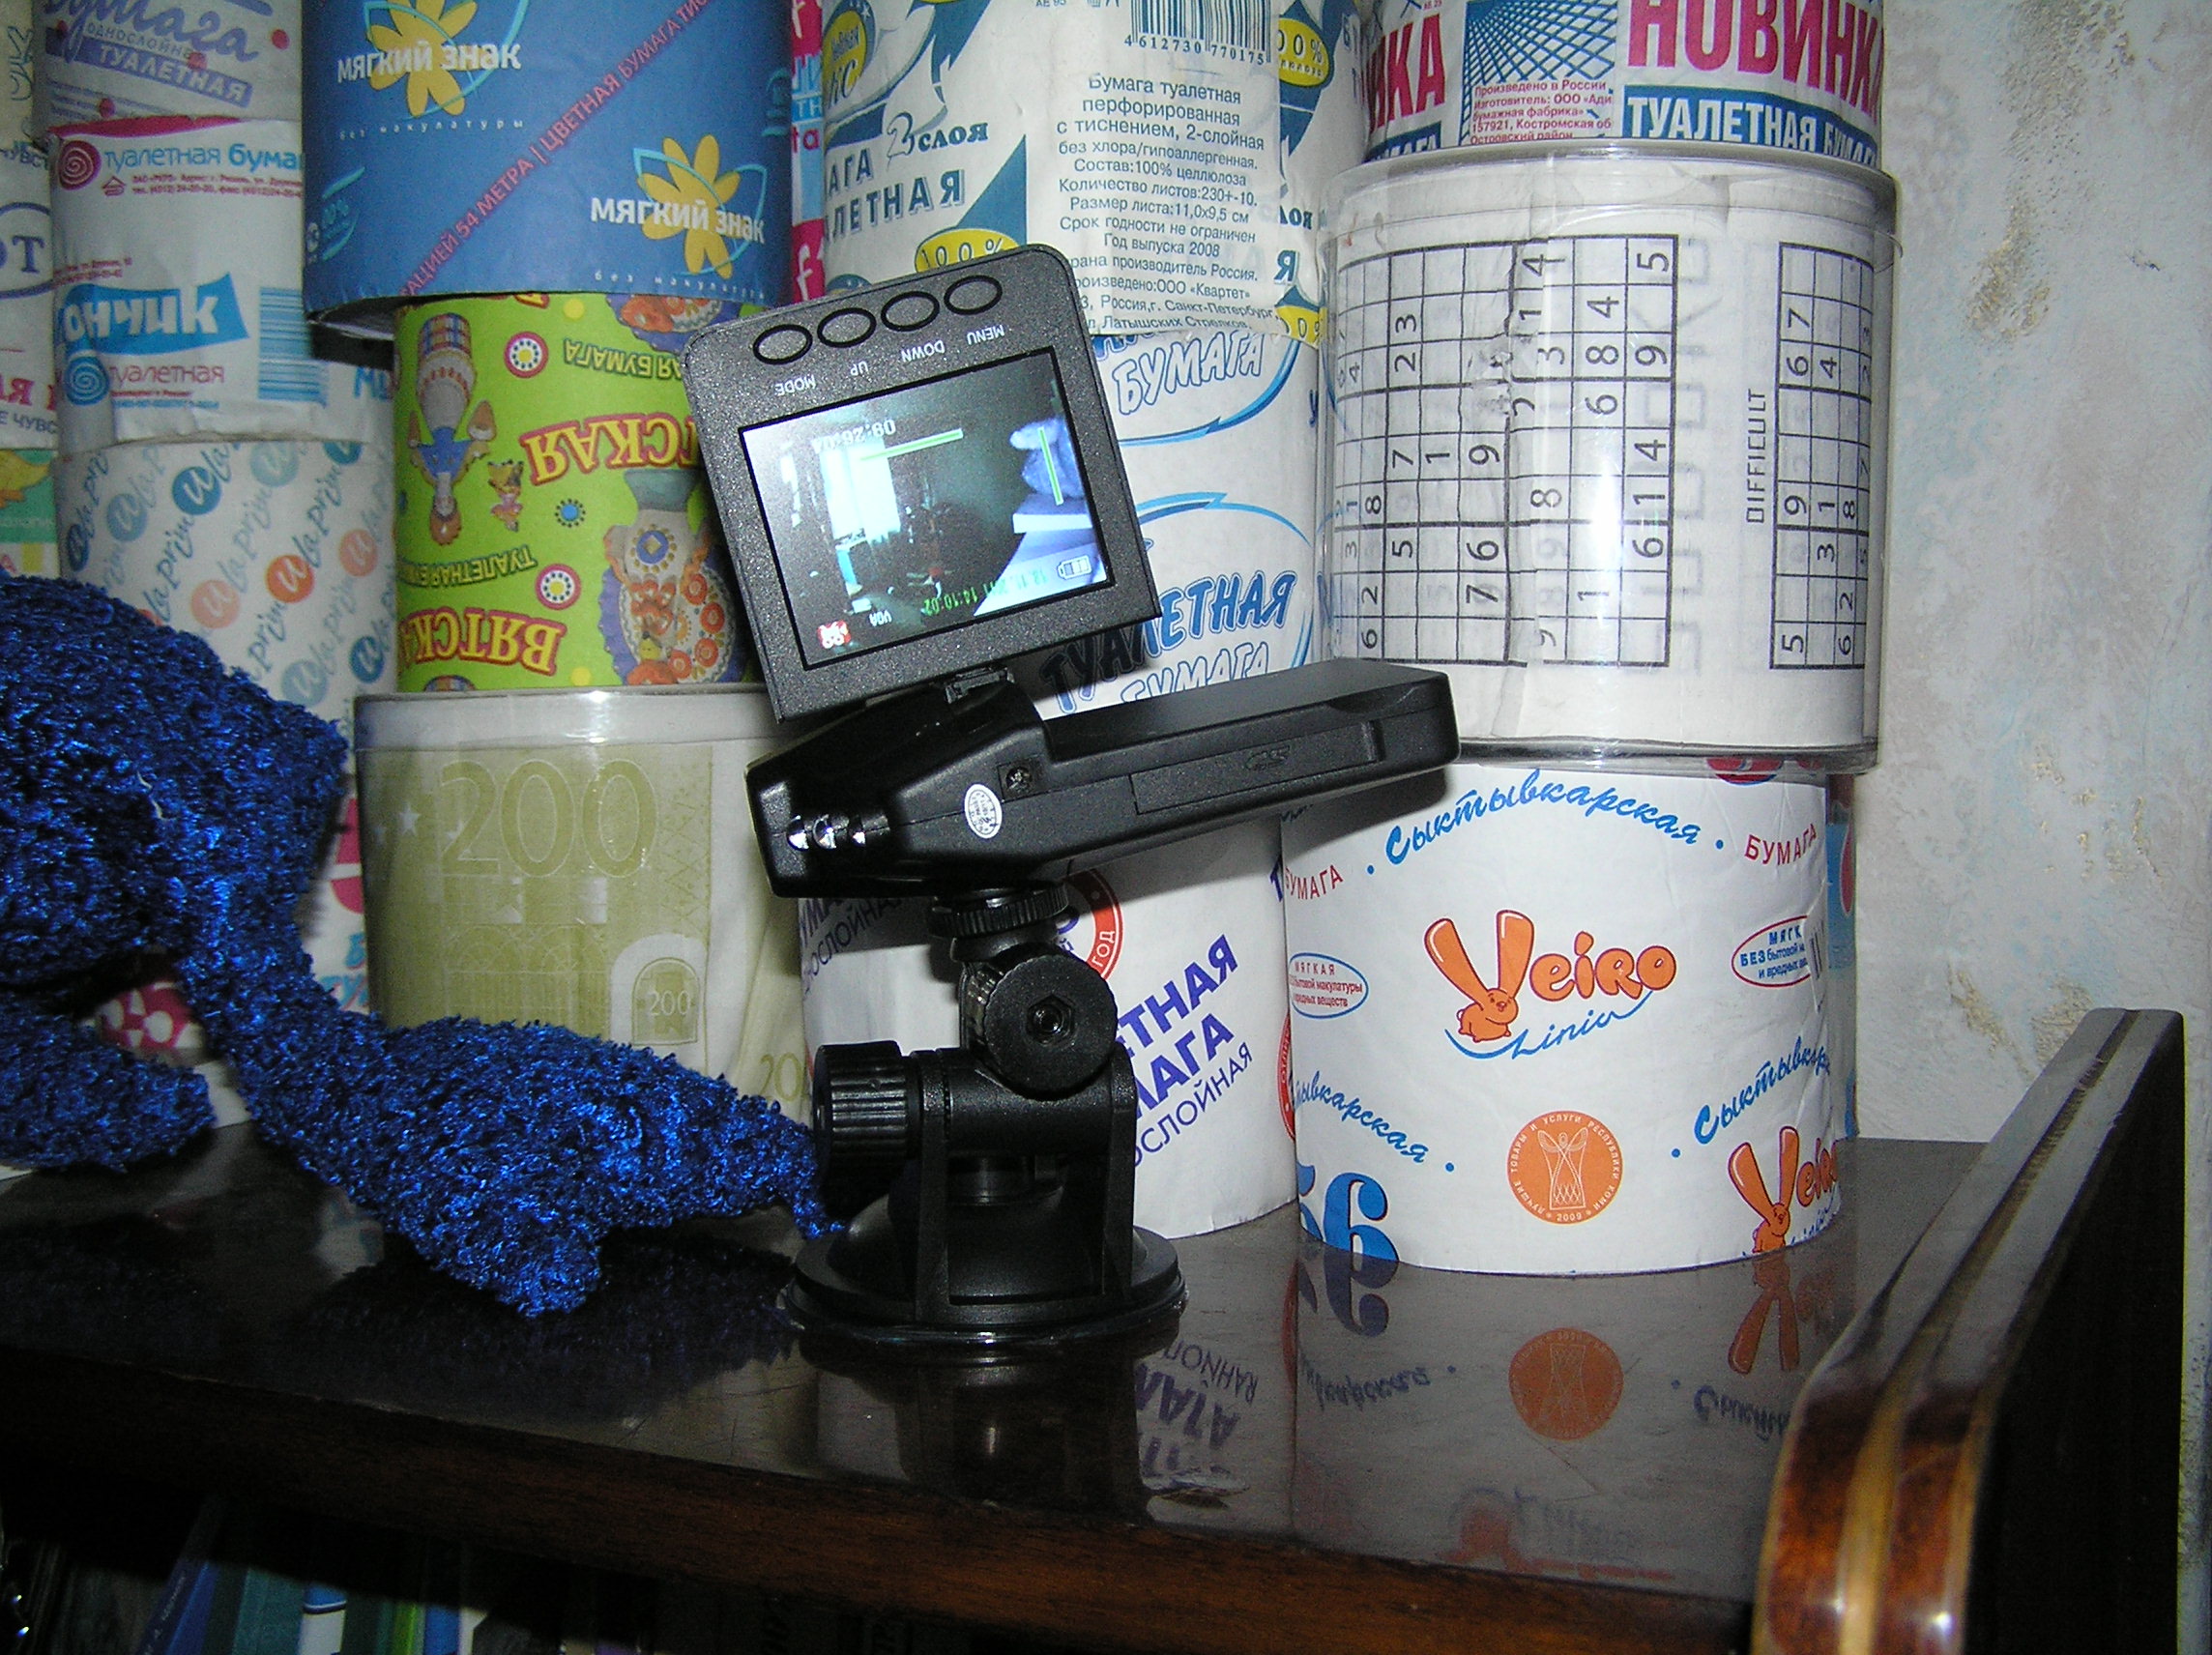 Автомобильный видеорегистратор в действии на фоне коллекции туалетной бумаги